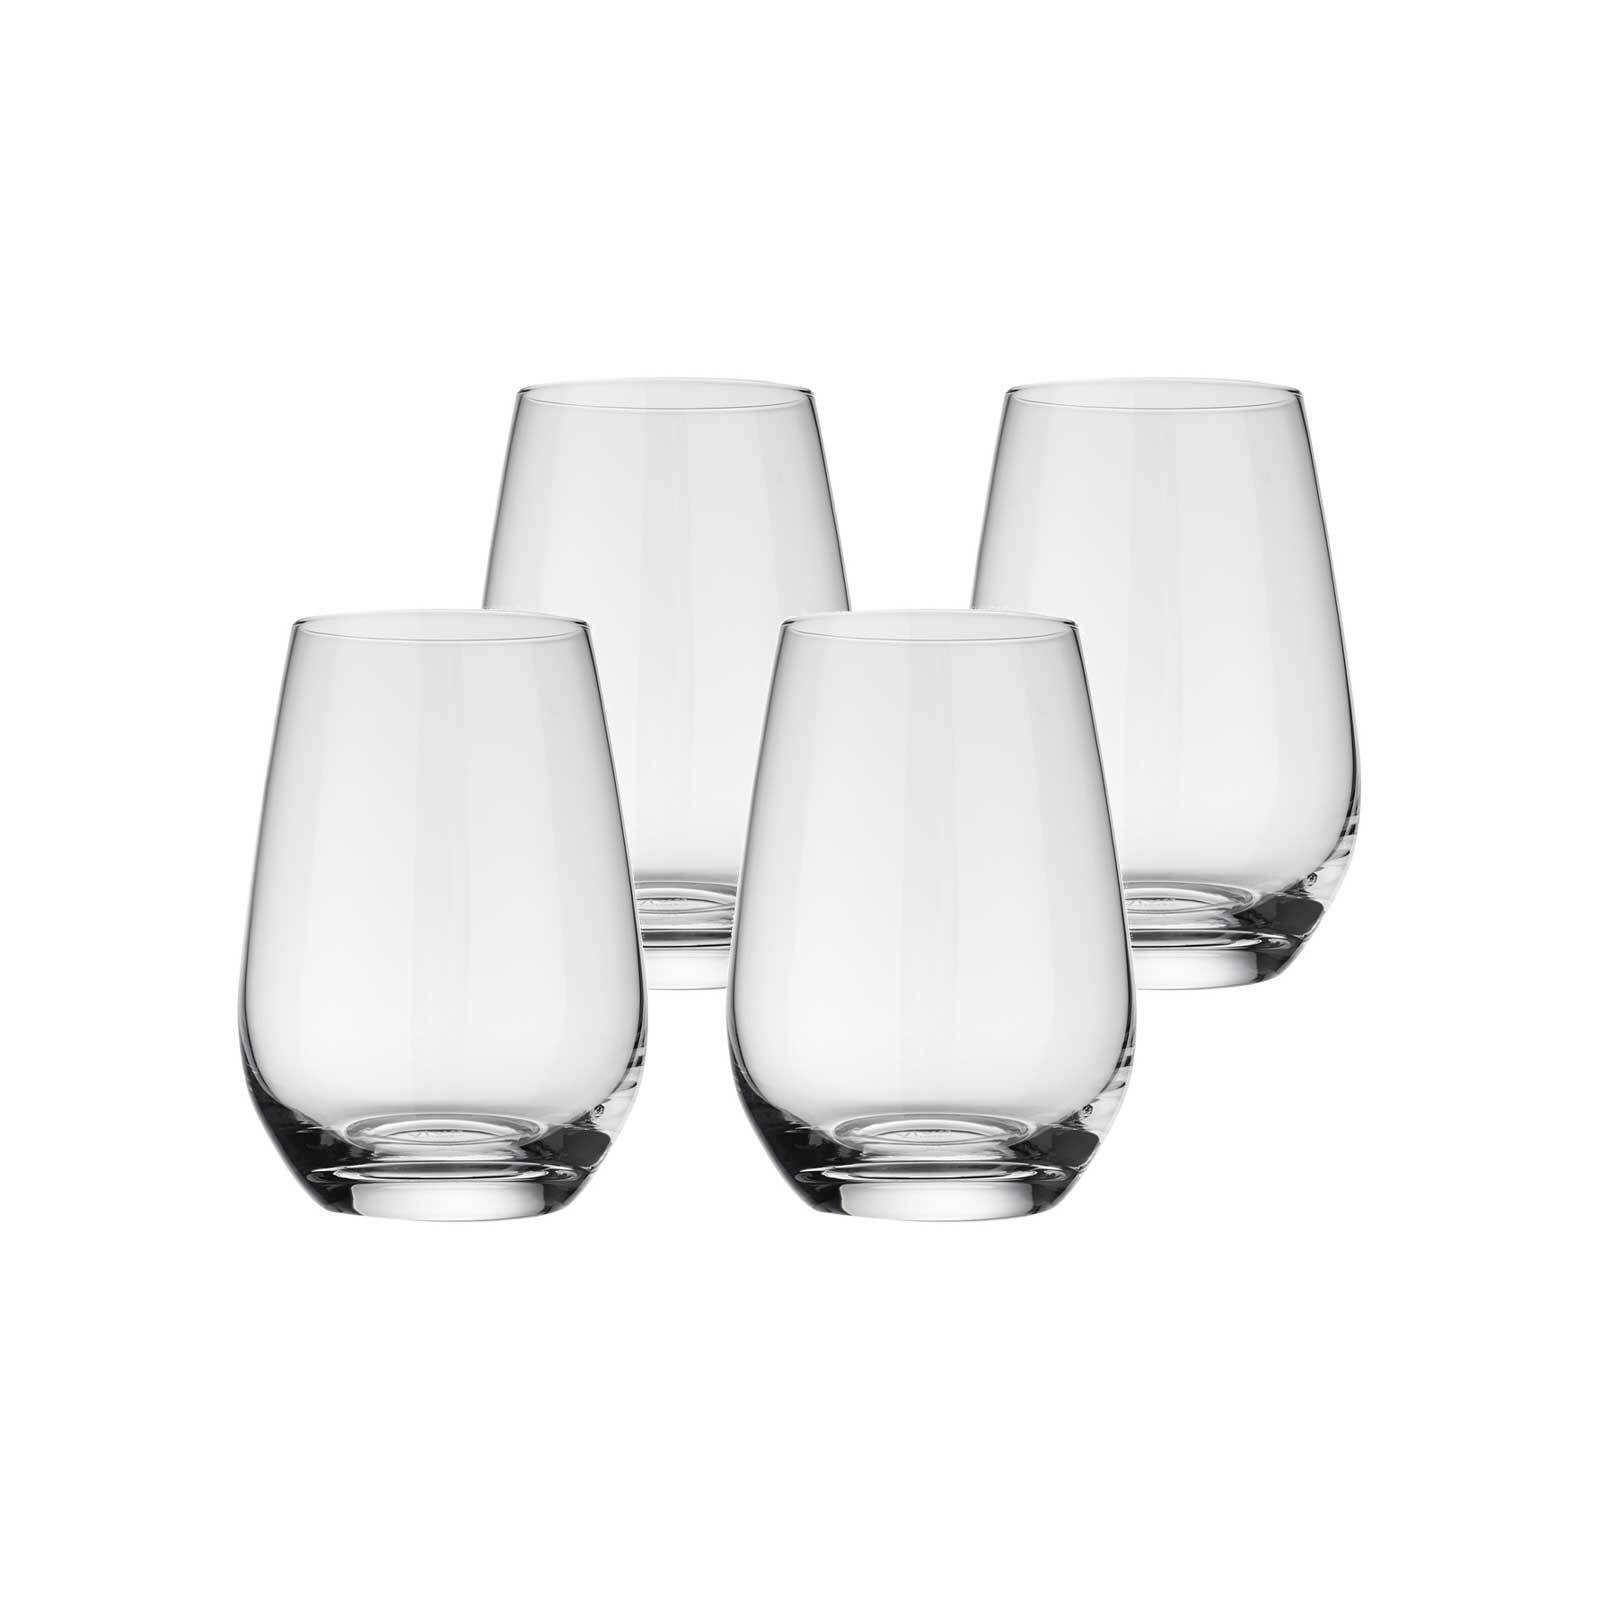 Villeroy & Boch Longdrinkglas Voice Basic Longdrinkgläser 397 ml 4er Set, Glas